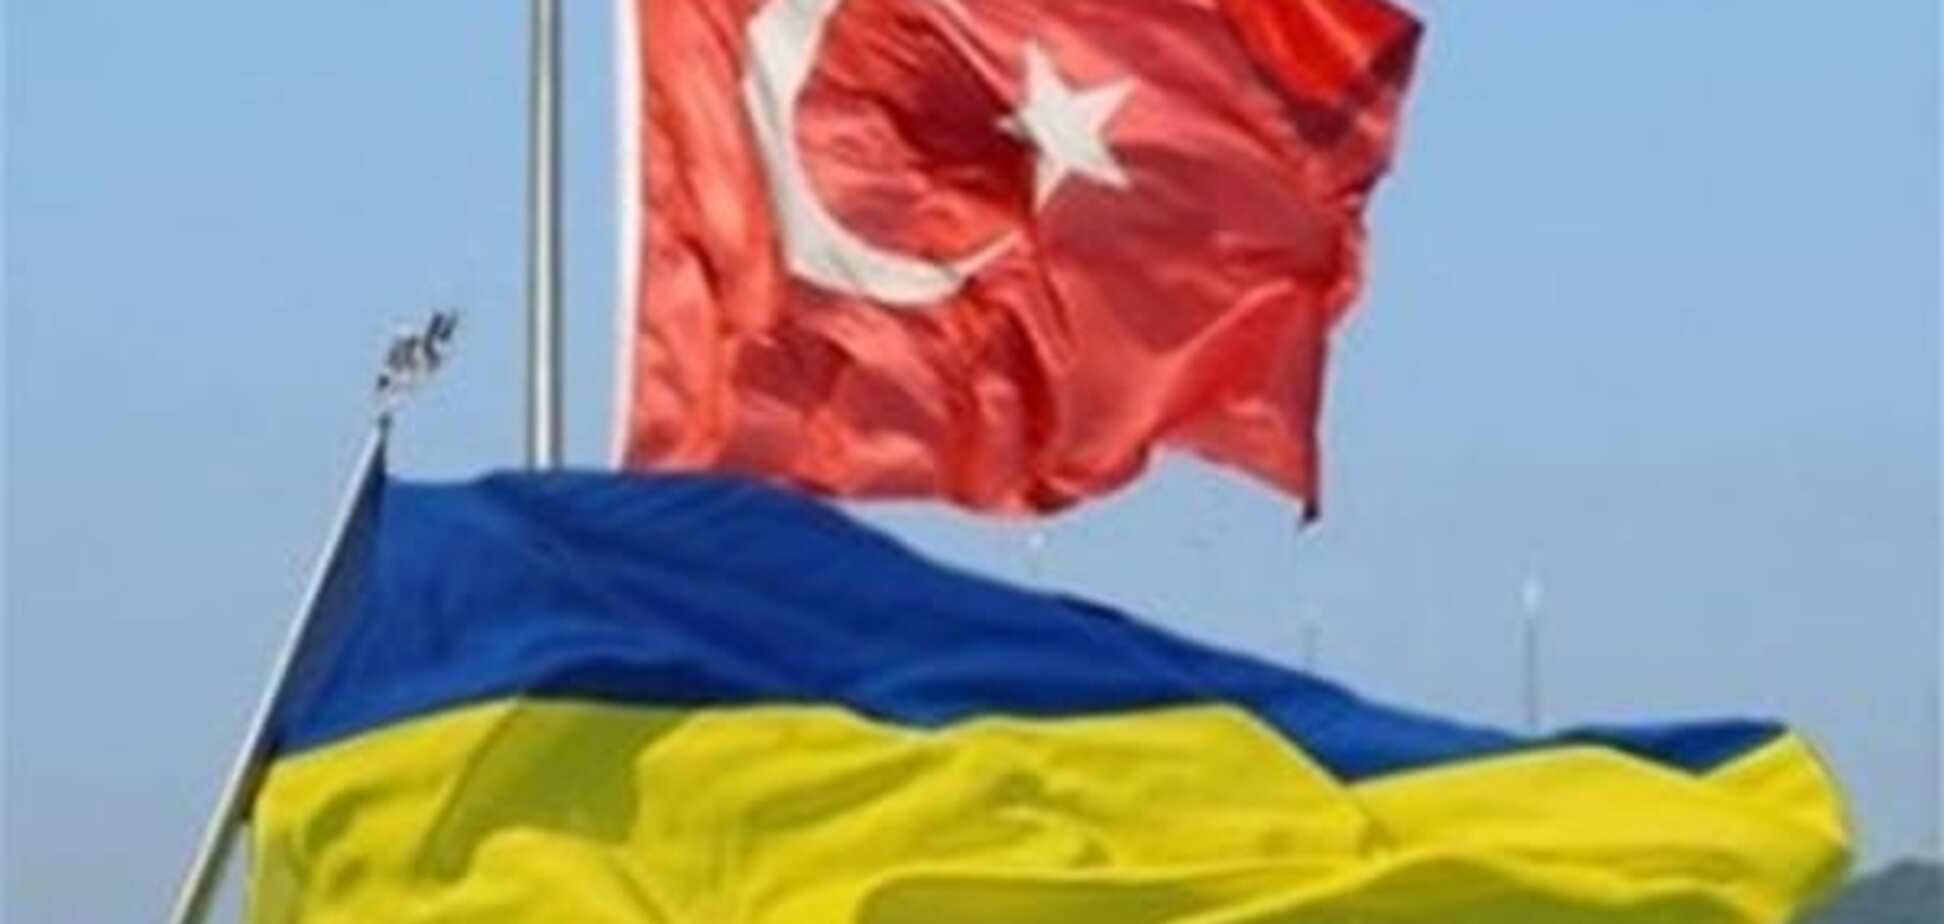 Скрытый козырь: что получит Украина от сотрудничества с Турцией